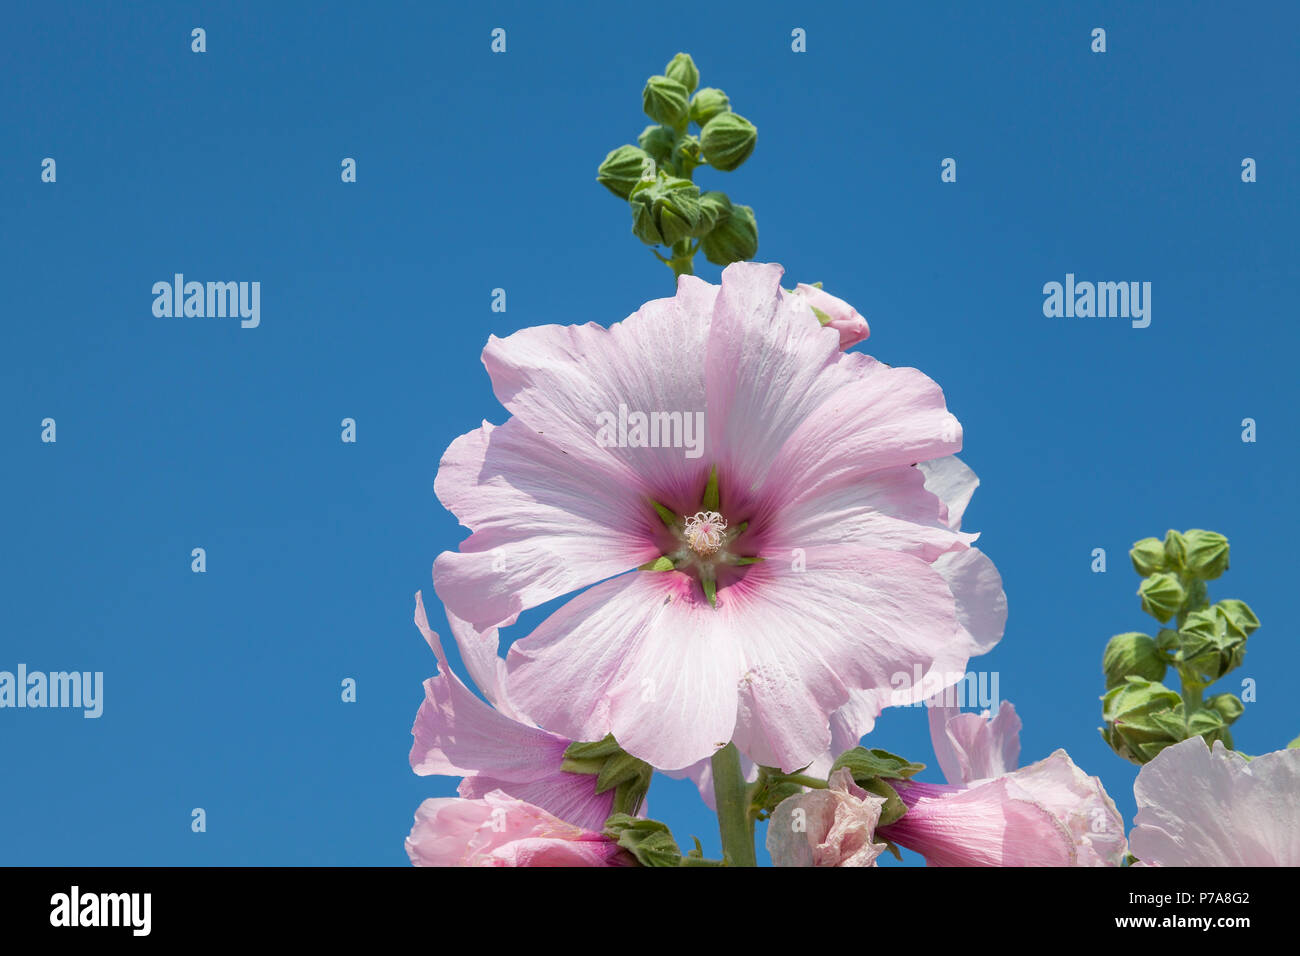 Rosa Malve Blume, Alcea sp., gegen den sonnigen blauen Himmel. Zierpflanzen Frühjahr blühenden Garten Pflanzen im Gartenbau verwendet. Spike mit unreifen Stockfoto